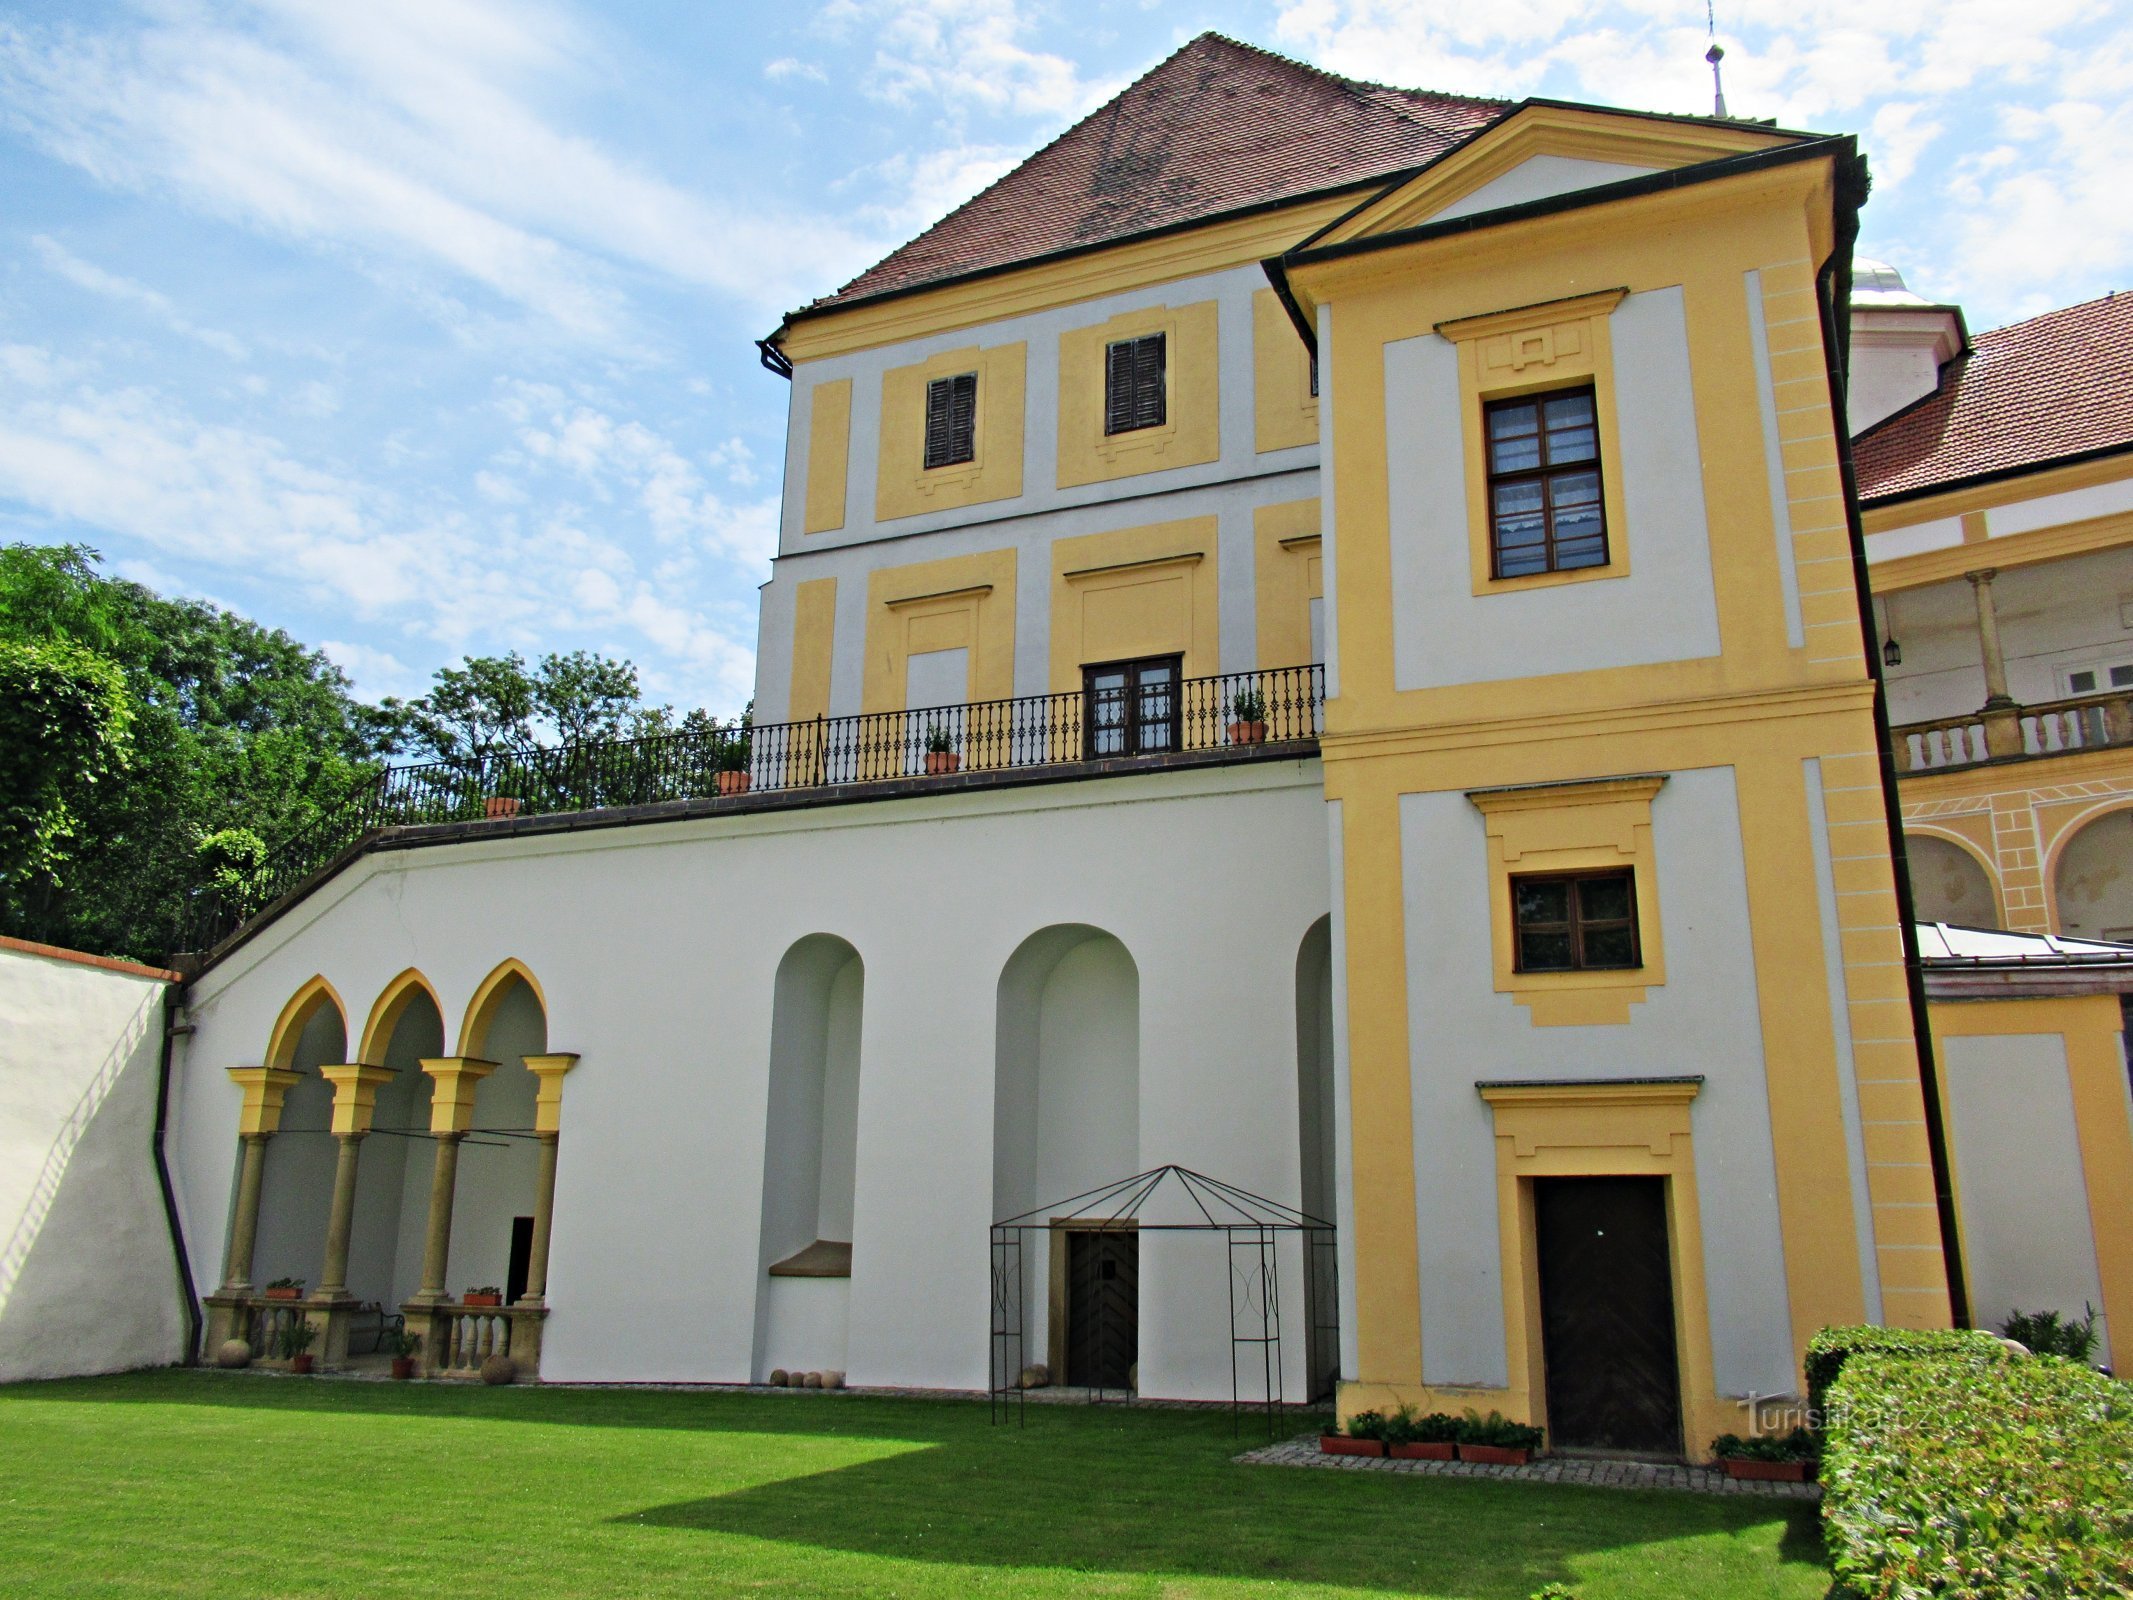 Recorrido por los interiores del romántico castillo de Tovačov